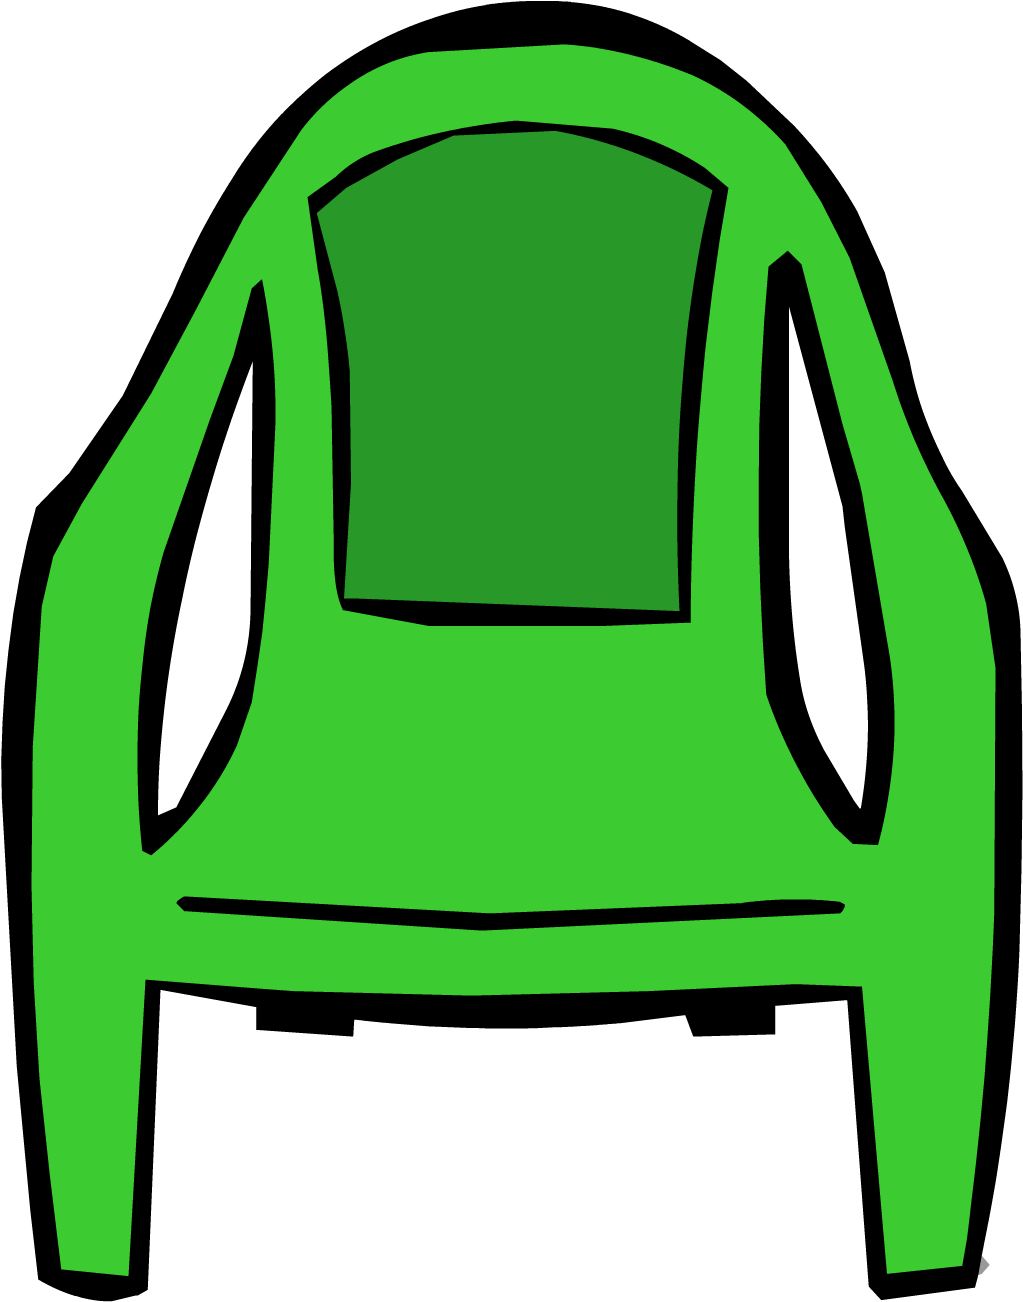 Green Plastic Chair - Club Penguin Green Chair (1301x1301)